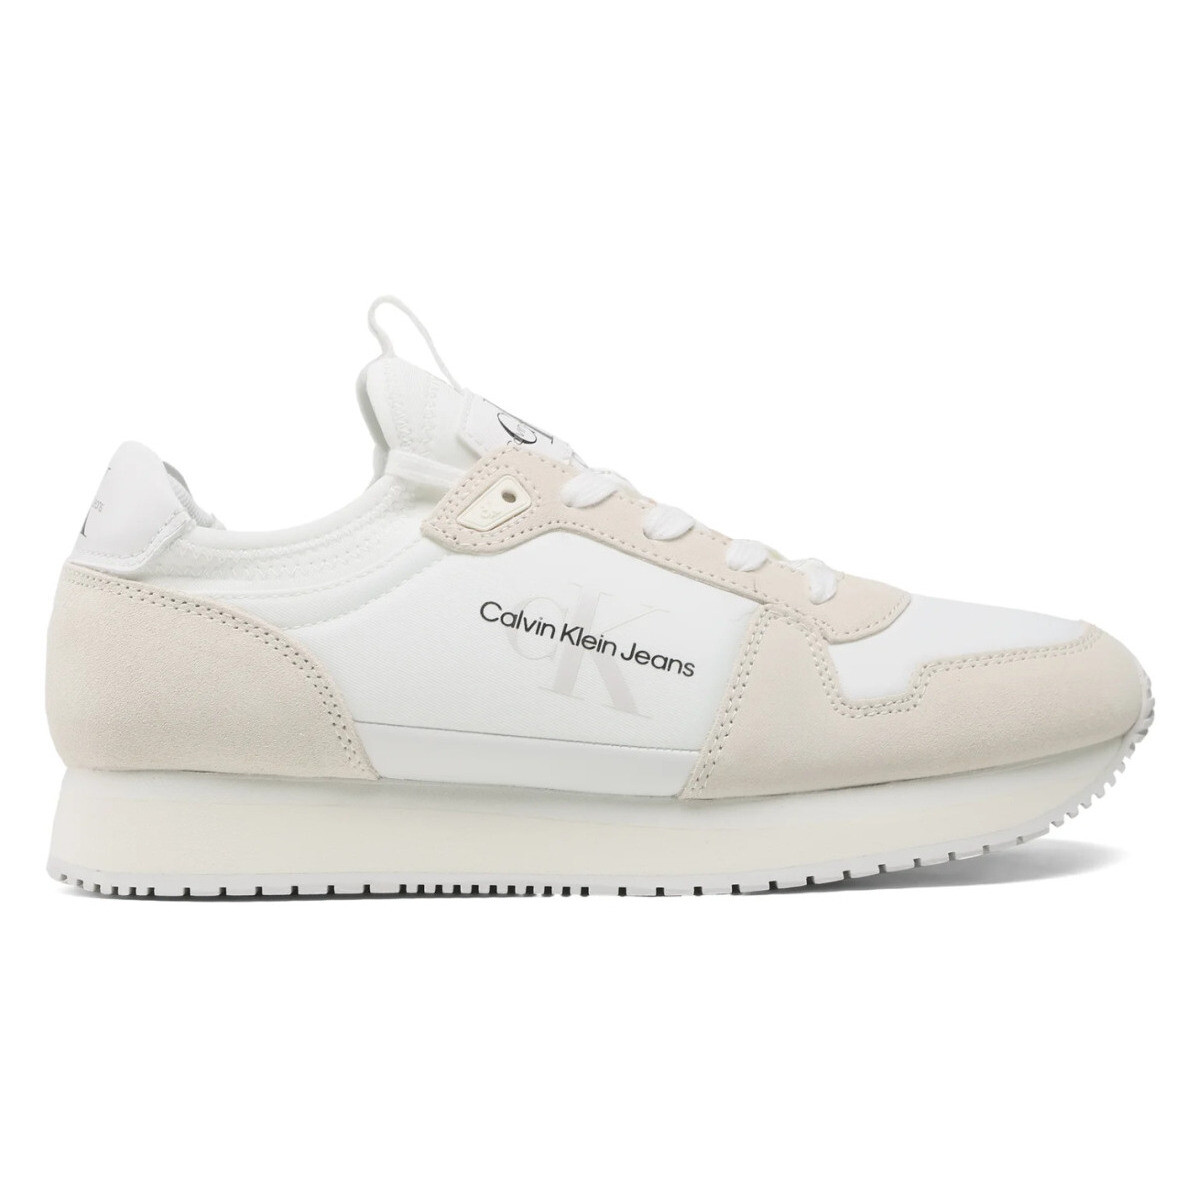 Παπούτσια Άνδρας Sneakers Calvin Klein Jeans YM0YM00553 Άσπρο